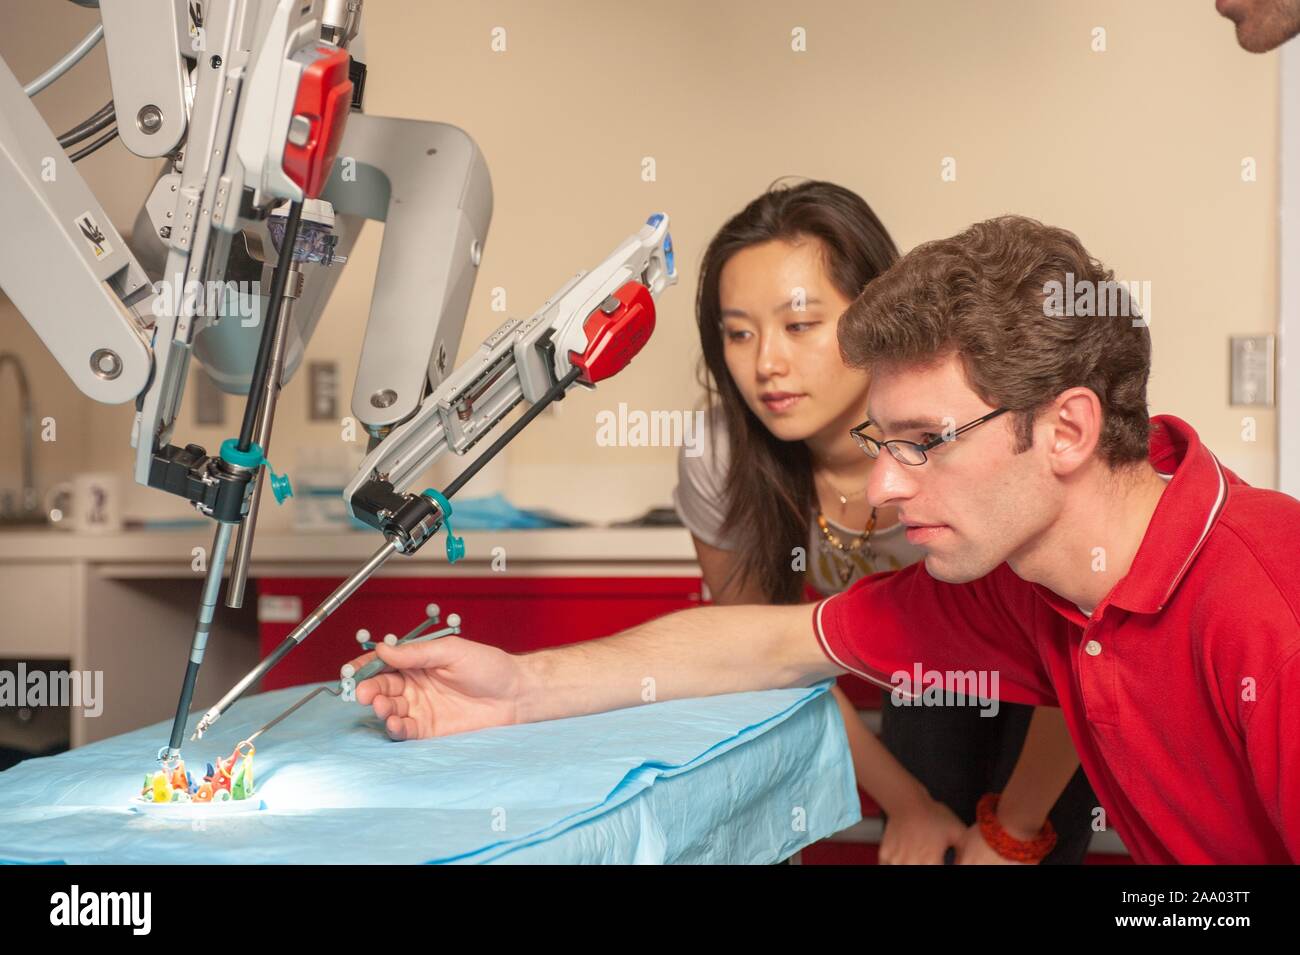 Un étudiant en génie de l'École de merlan montres un collègue utiliser un long outil pour aider un robot chirurgical da Vinci travaillant dans une fausse salle d'opération à la Johns Hopkins University, Baltimore, Maryland, le 6 avril 2009. À partir de la collection photographique de Homewood. () Banque D'Images